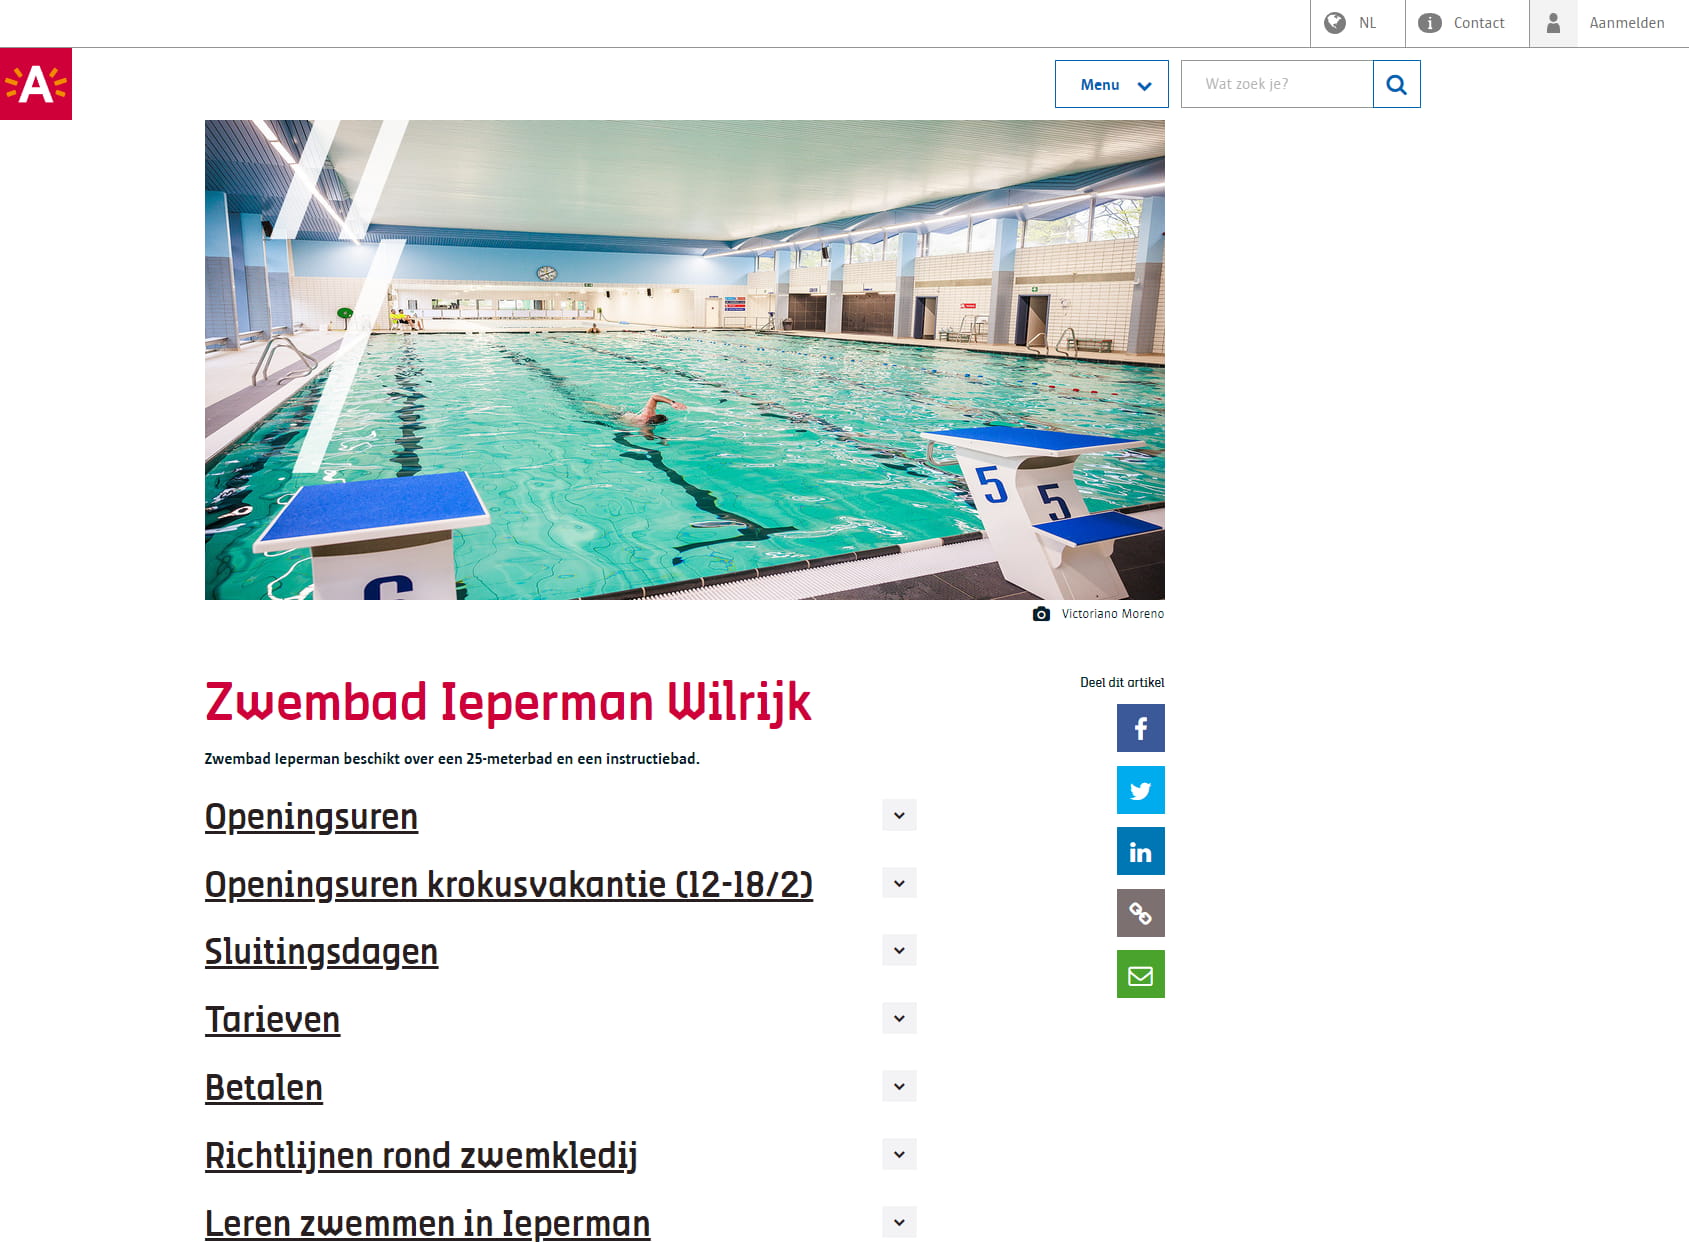 Wilrijk Zwembad Ieperman